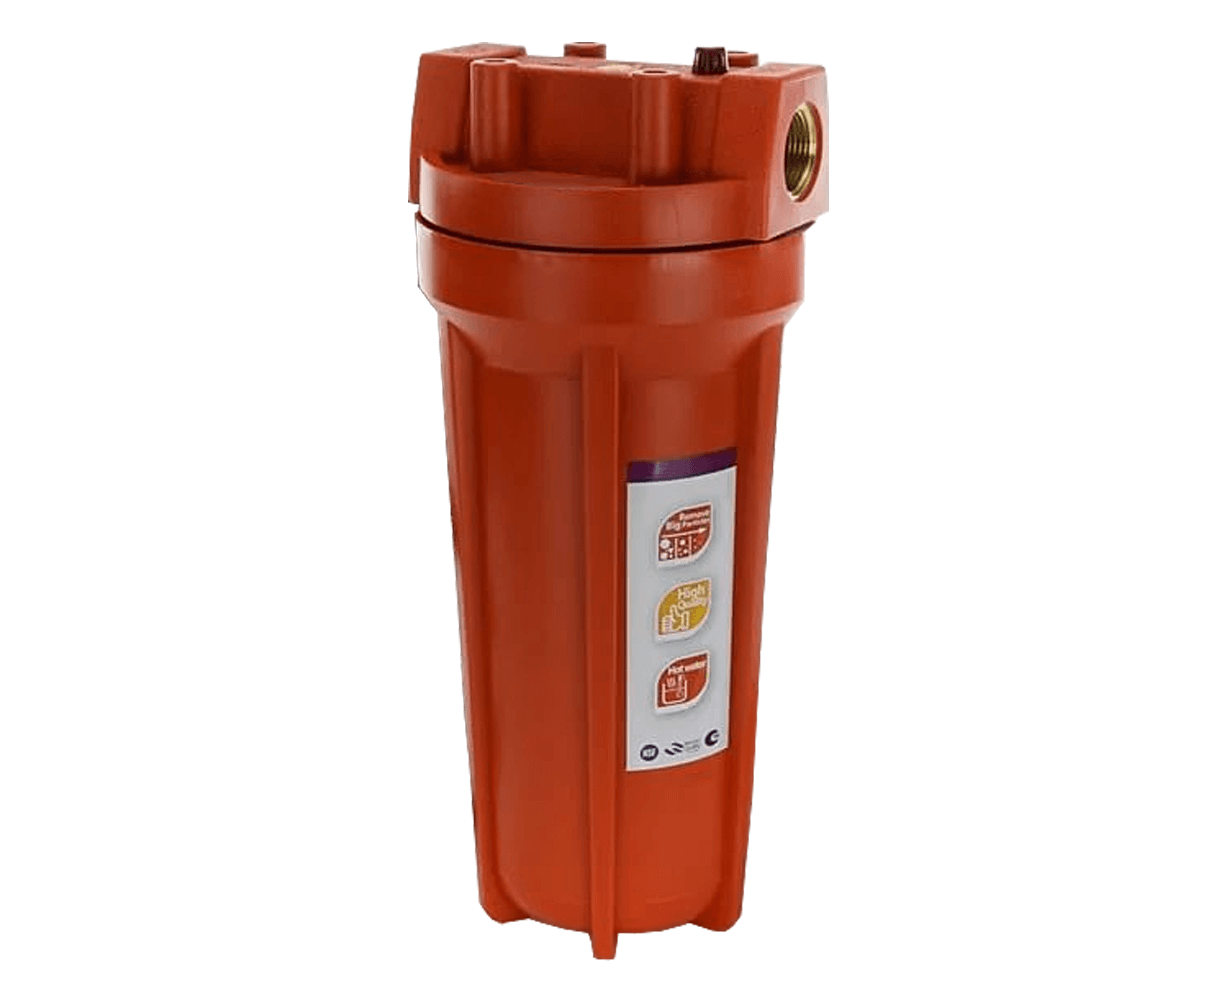 Фильтр магистральный RAIFIL ps891o1-o-PR-BN 1/2 для горячей воды. Аквапро 10sl корпус для горячей воды (FHPR-HPR-S). Фильтр магистральный equation 10. Корпус фильтра 10 SL для горячей воды.